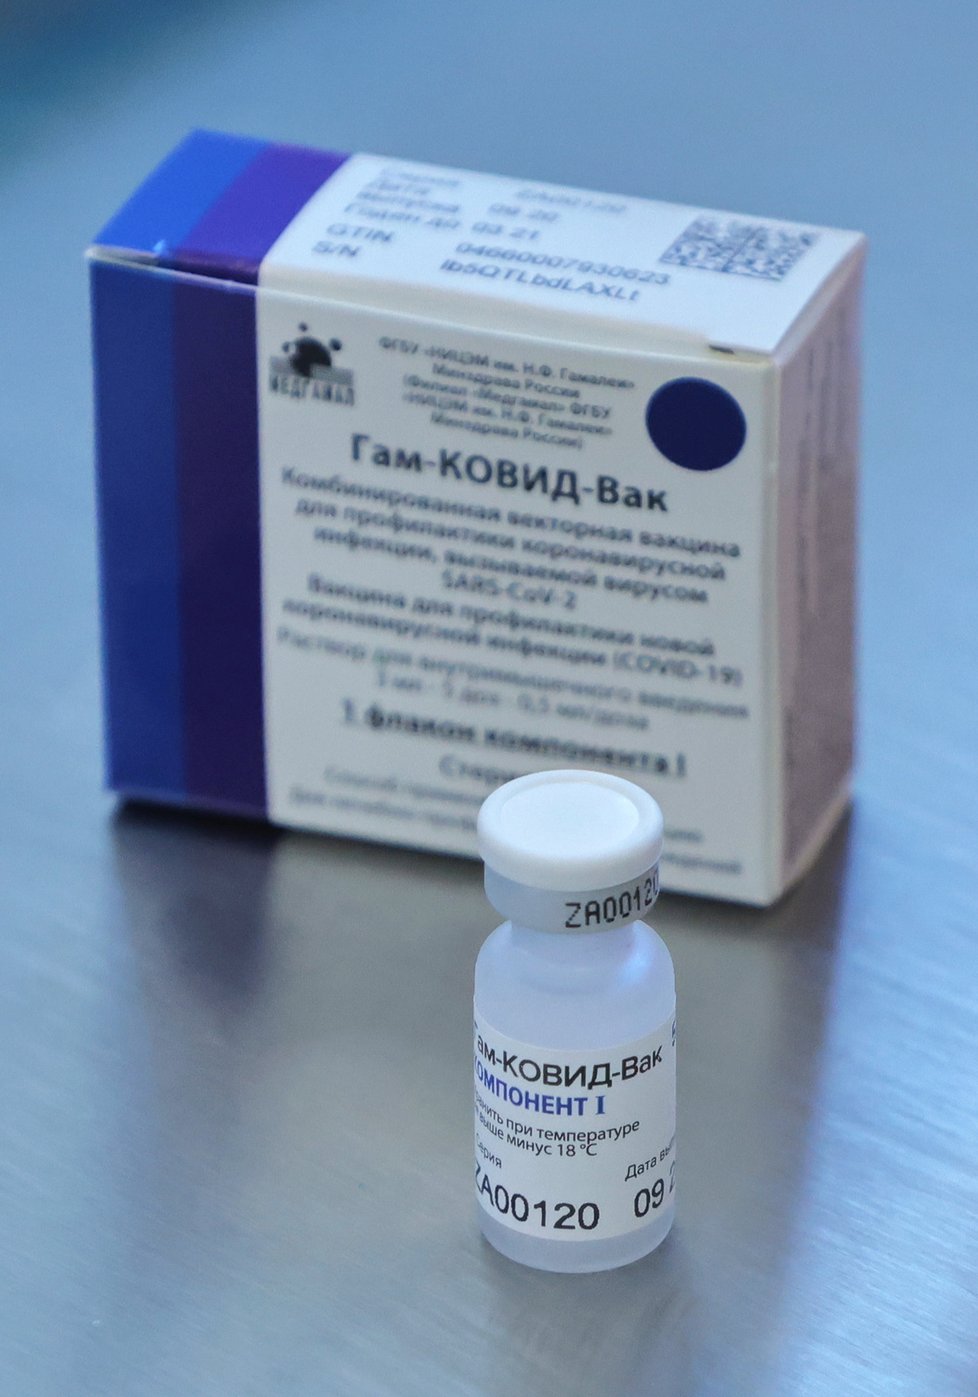 Koronavirus v Rusku: Produkce vakcíny Sputnik V